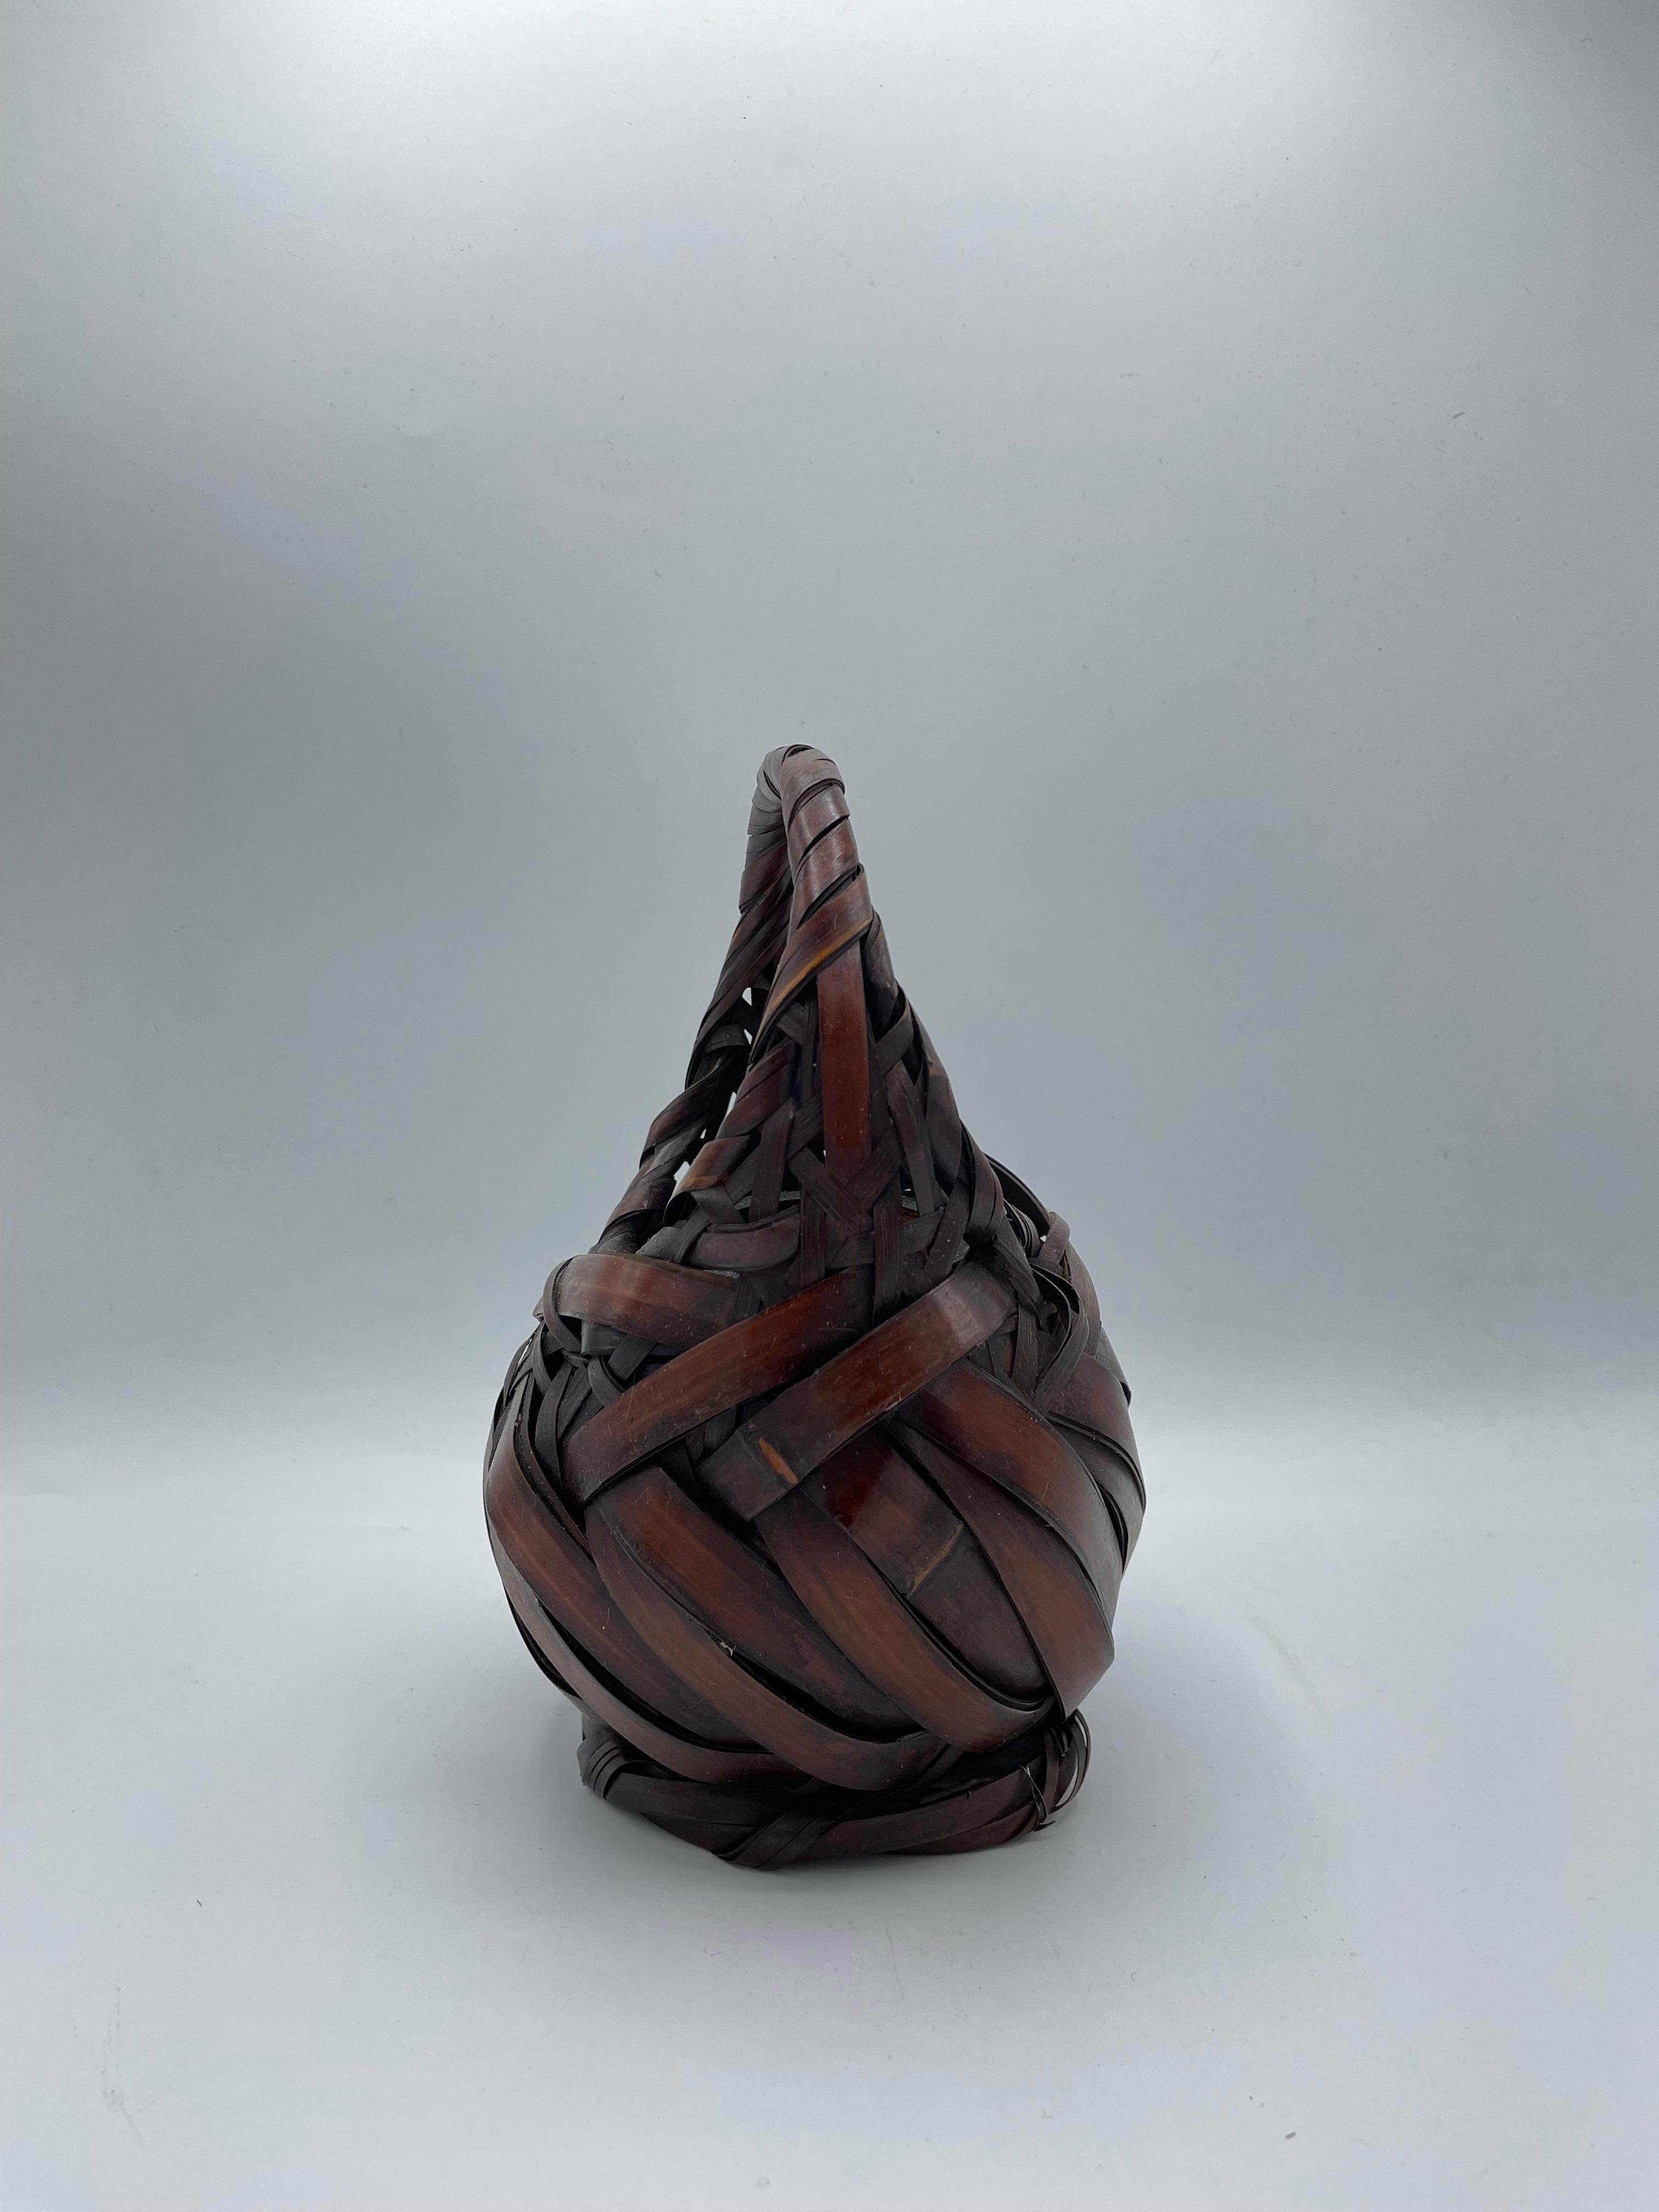 Il s'agit d'un panier en bambou. Il a été fabriqué dans les années 1920, à l'époque Taisho, au Japon.
Ce panier est accompagné d'un vase en bambou.

Dimensions :
Panier 15 x 13 x H 19 cm
Vase 7,5 x 6,2 x H 8,8 cm